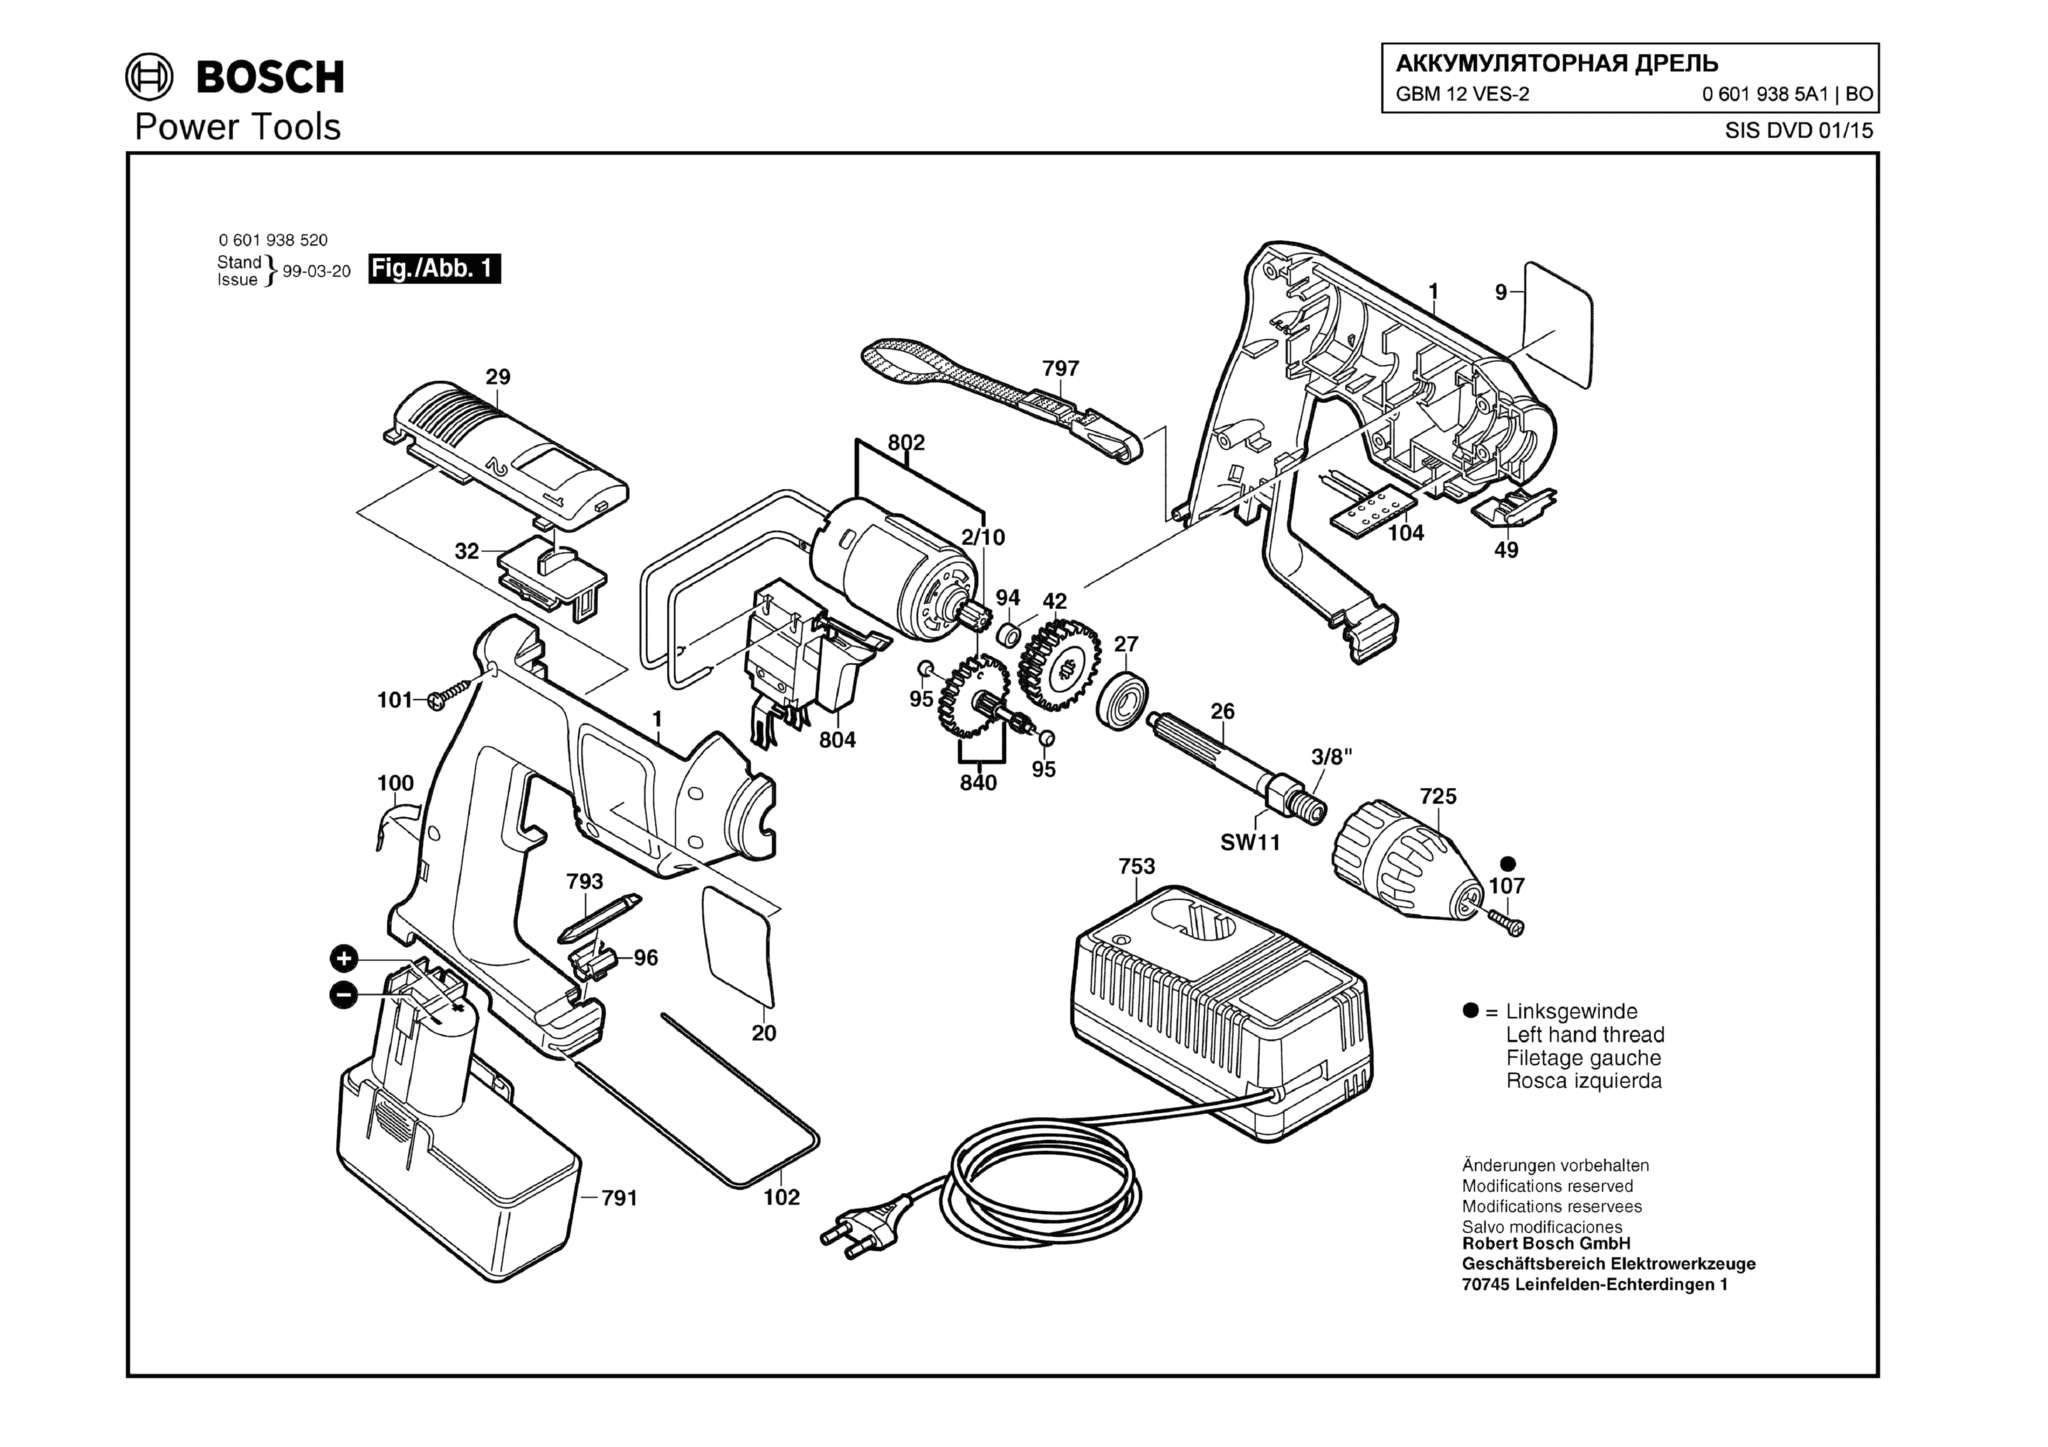 Запчасти, схема и деталировка Bosch GBM 12 VES-2 (ТИП 06019385A1)